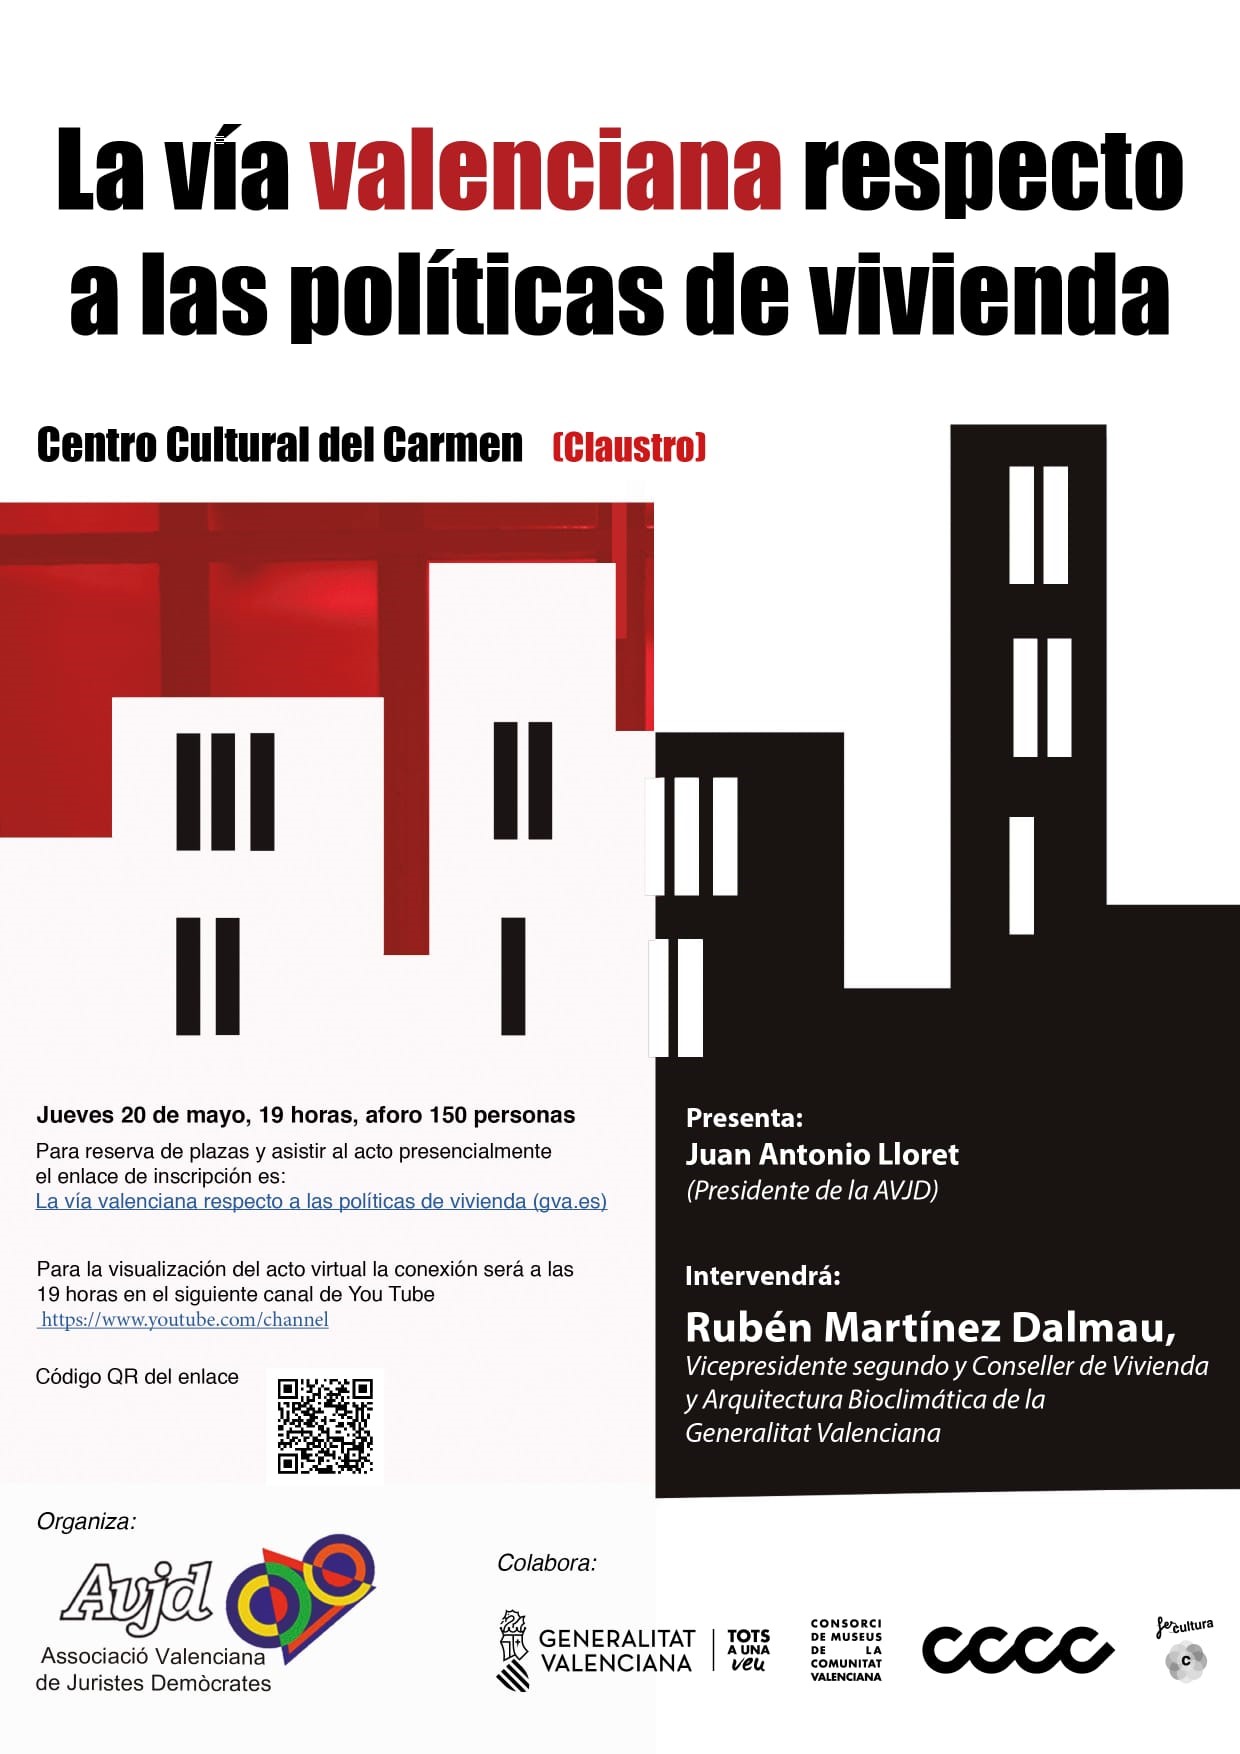 La vía Valenciana respecto a las políticas de vivienda